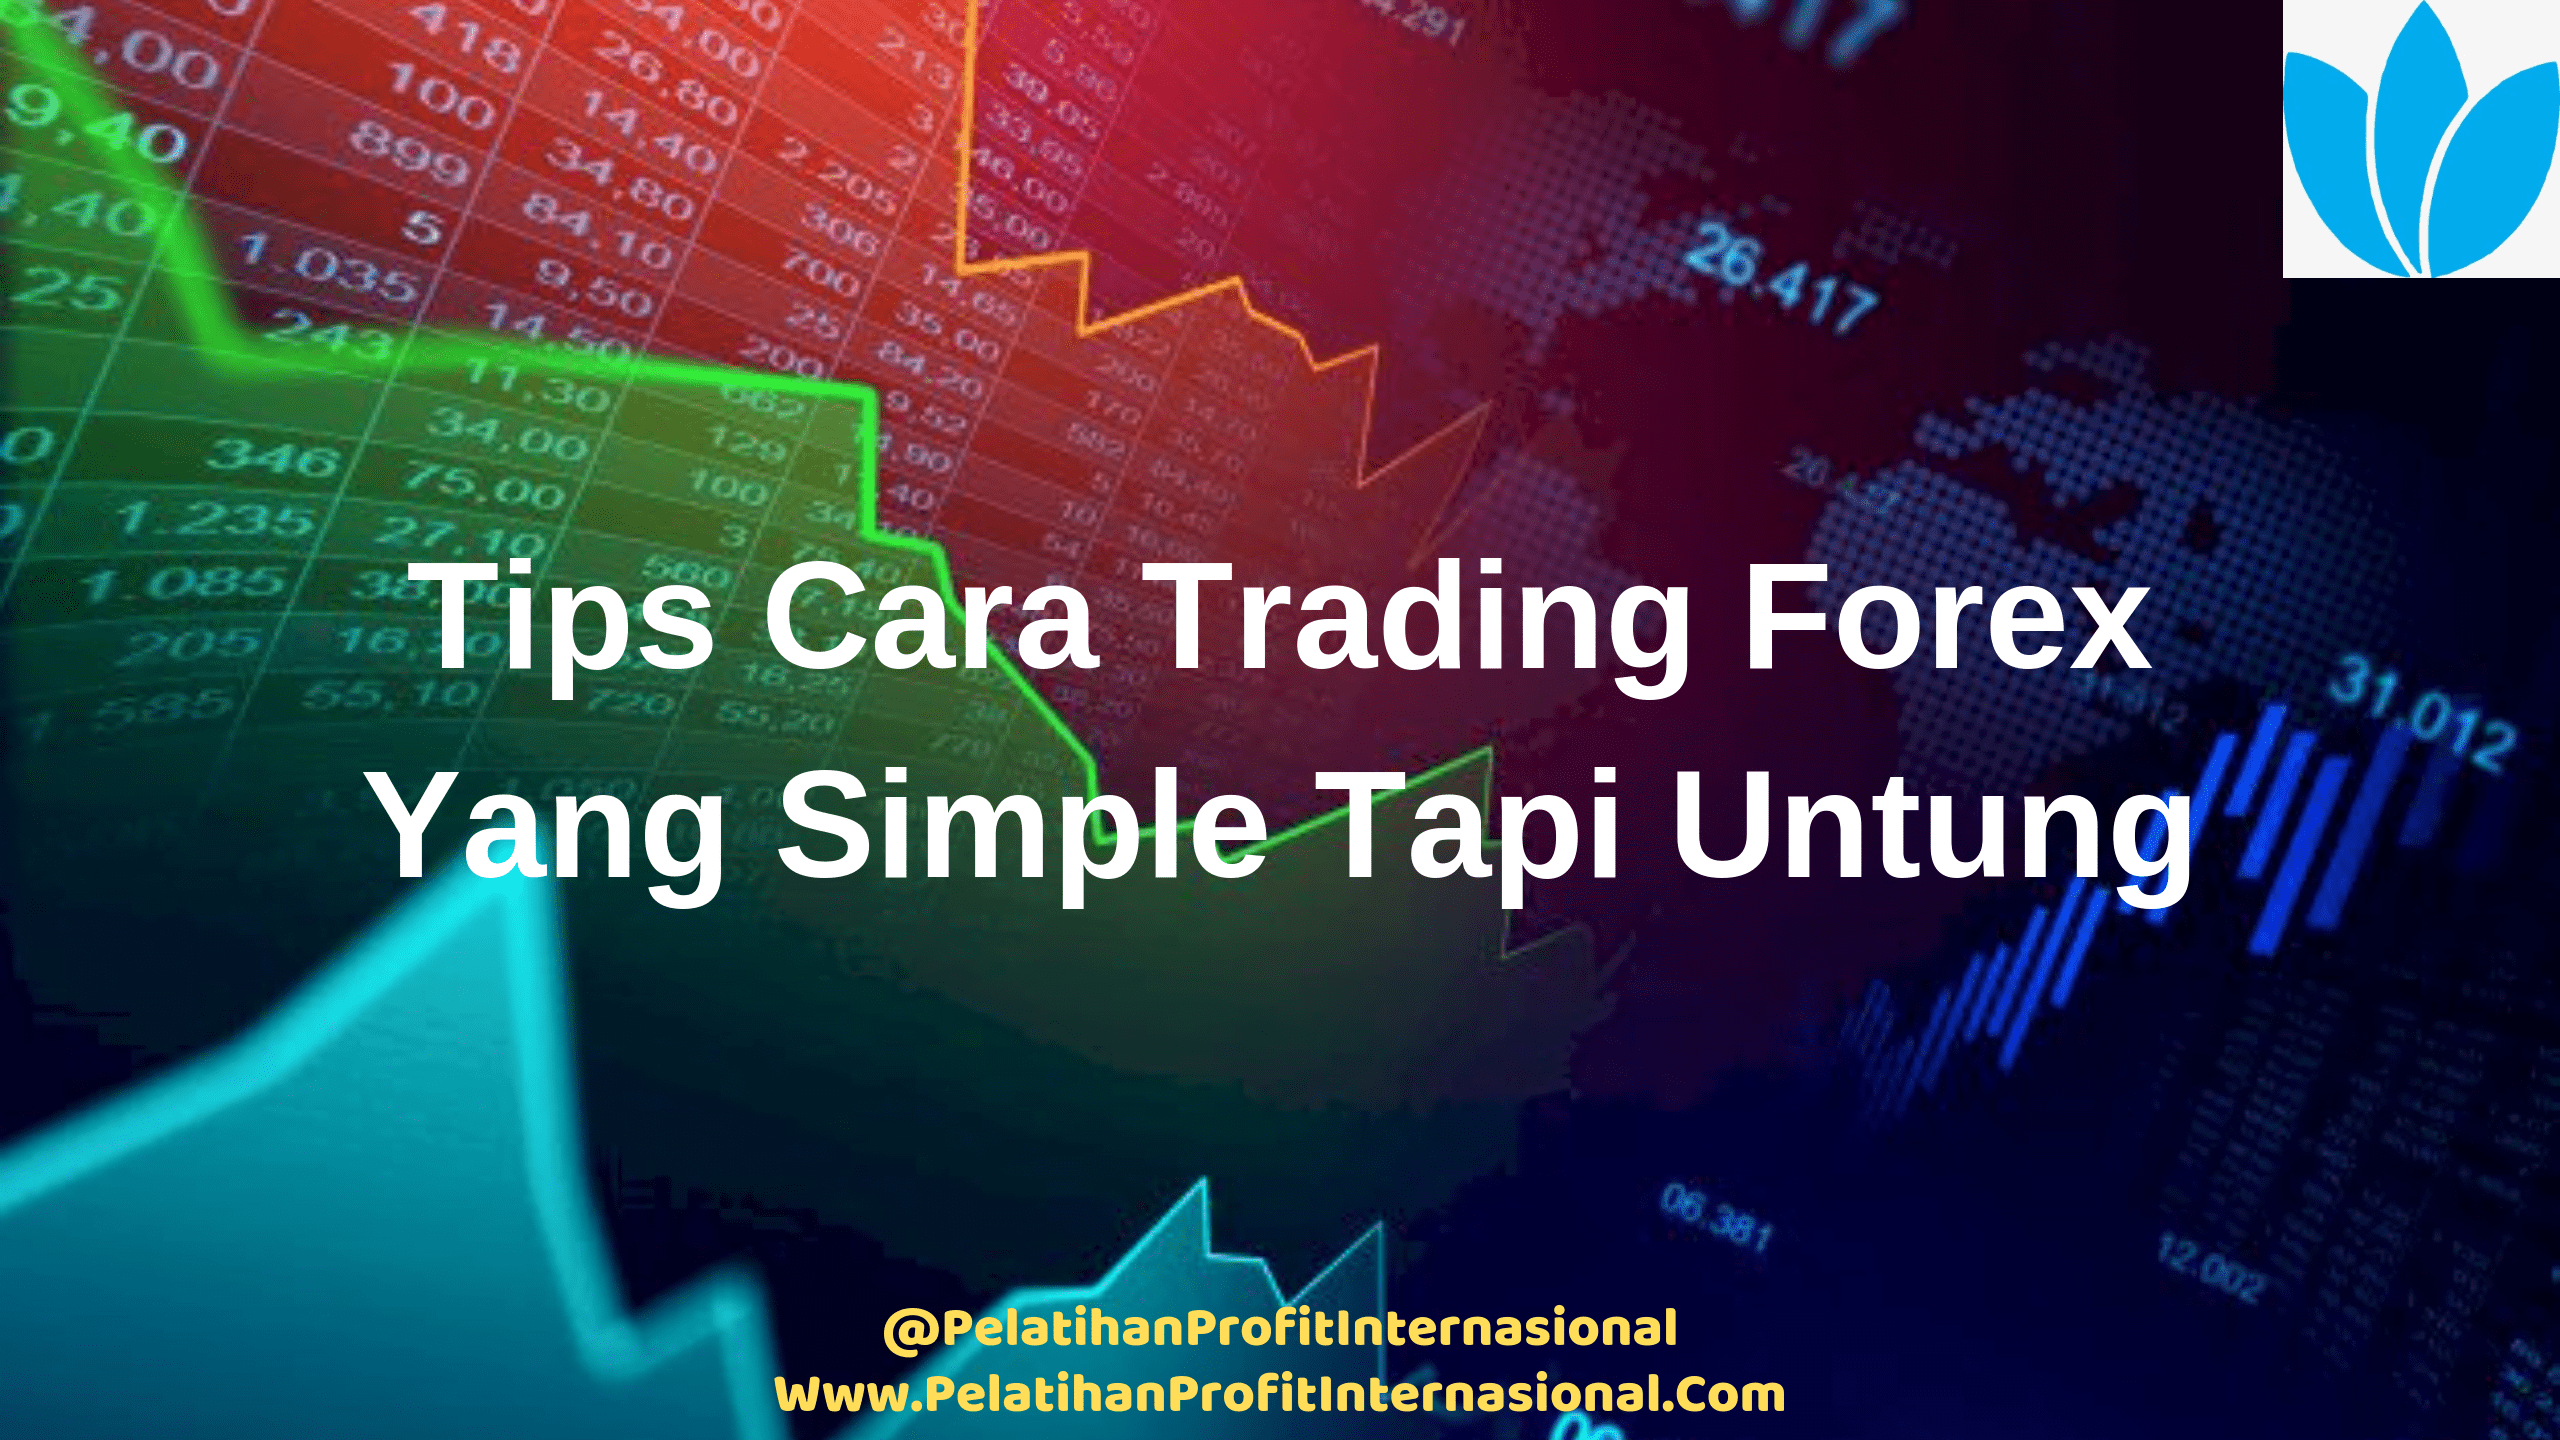 Tips Cara Trading Forex Yang Simple Tapi Untung | Belajar Trading